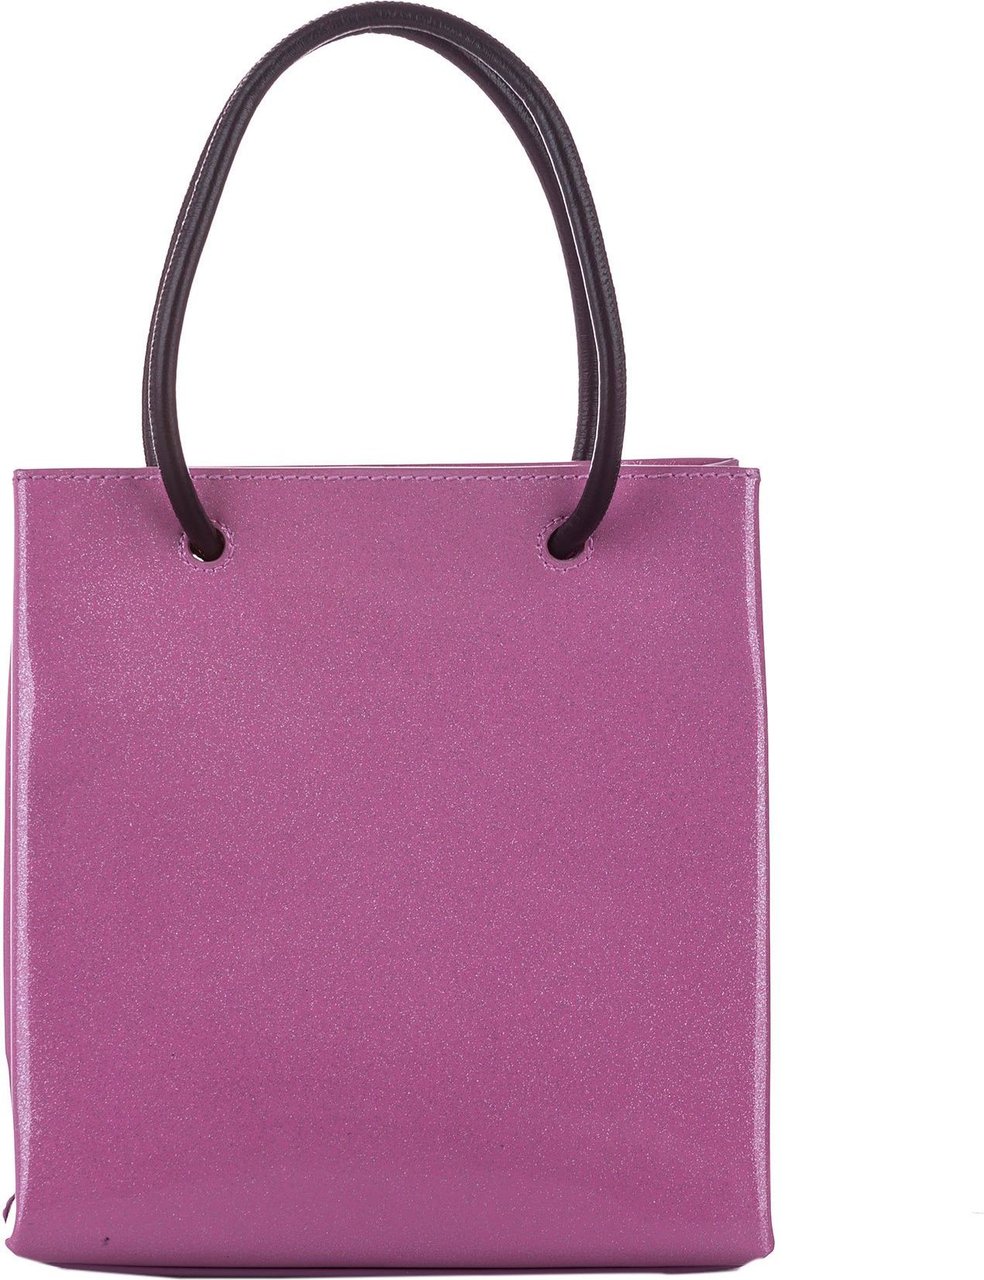 Balenciaga North South Shopping Handbag Roze